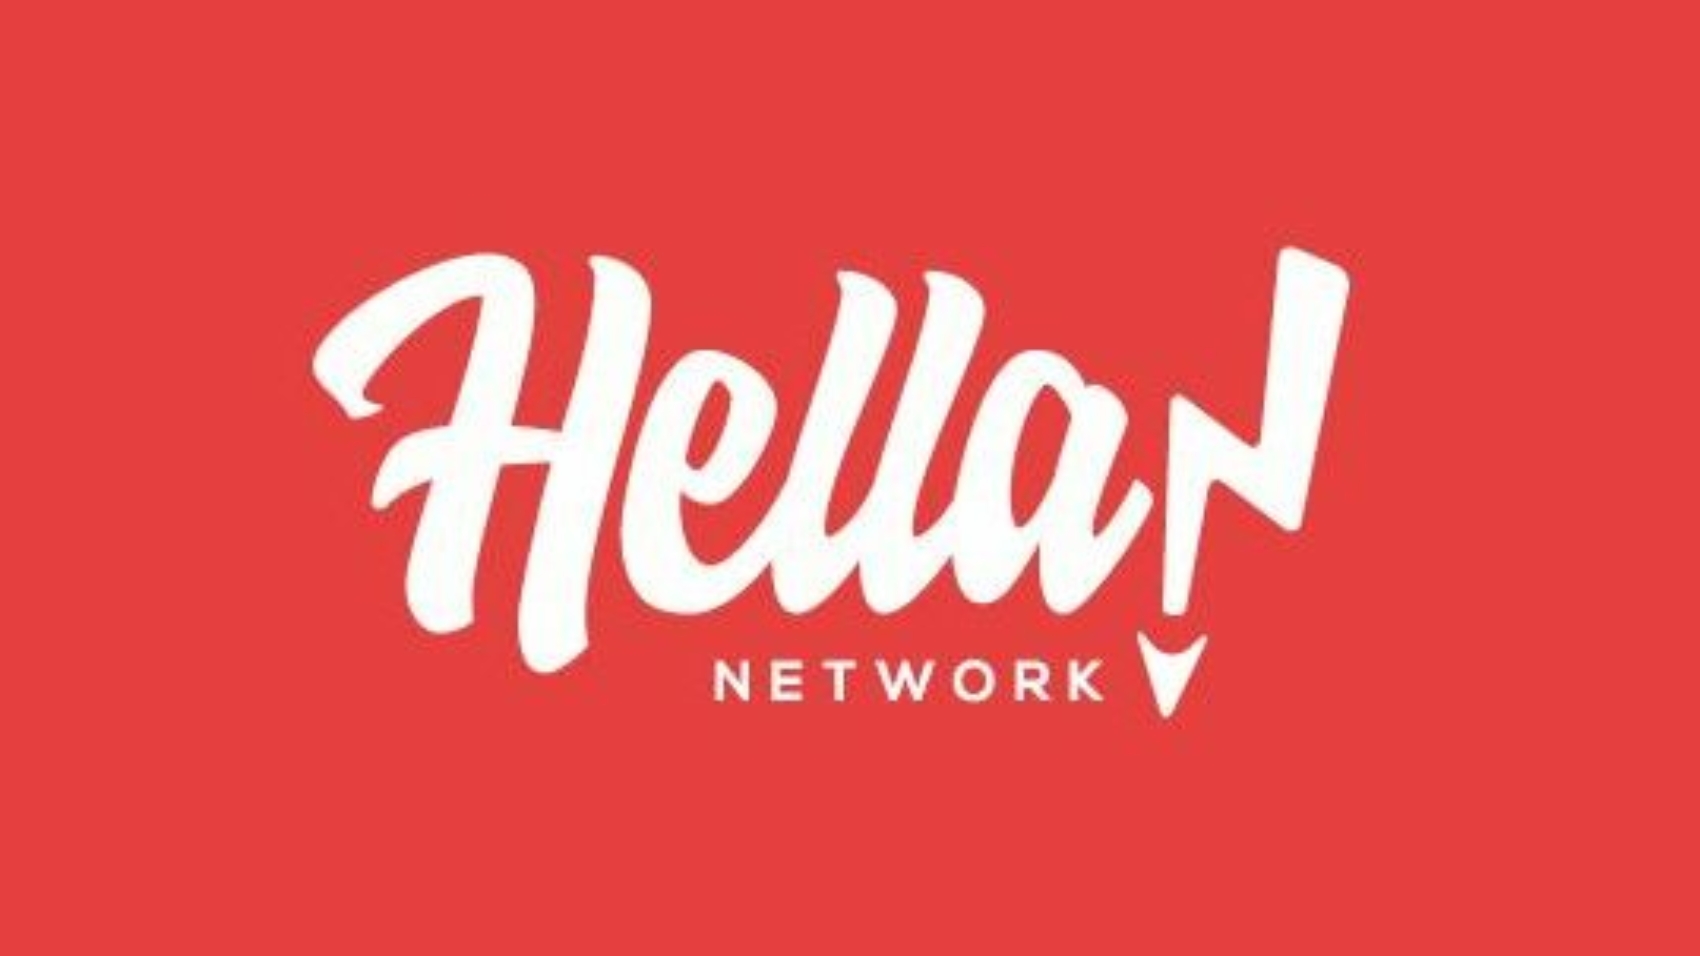 Hella network comunicazione inclusiva e parità intervista alla founder Flavia Brevi by Giada Rochetto